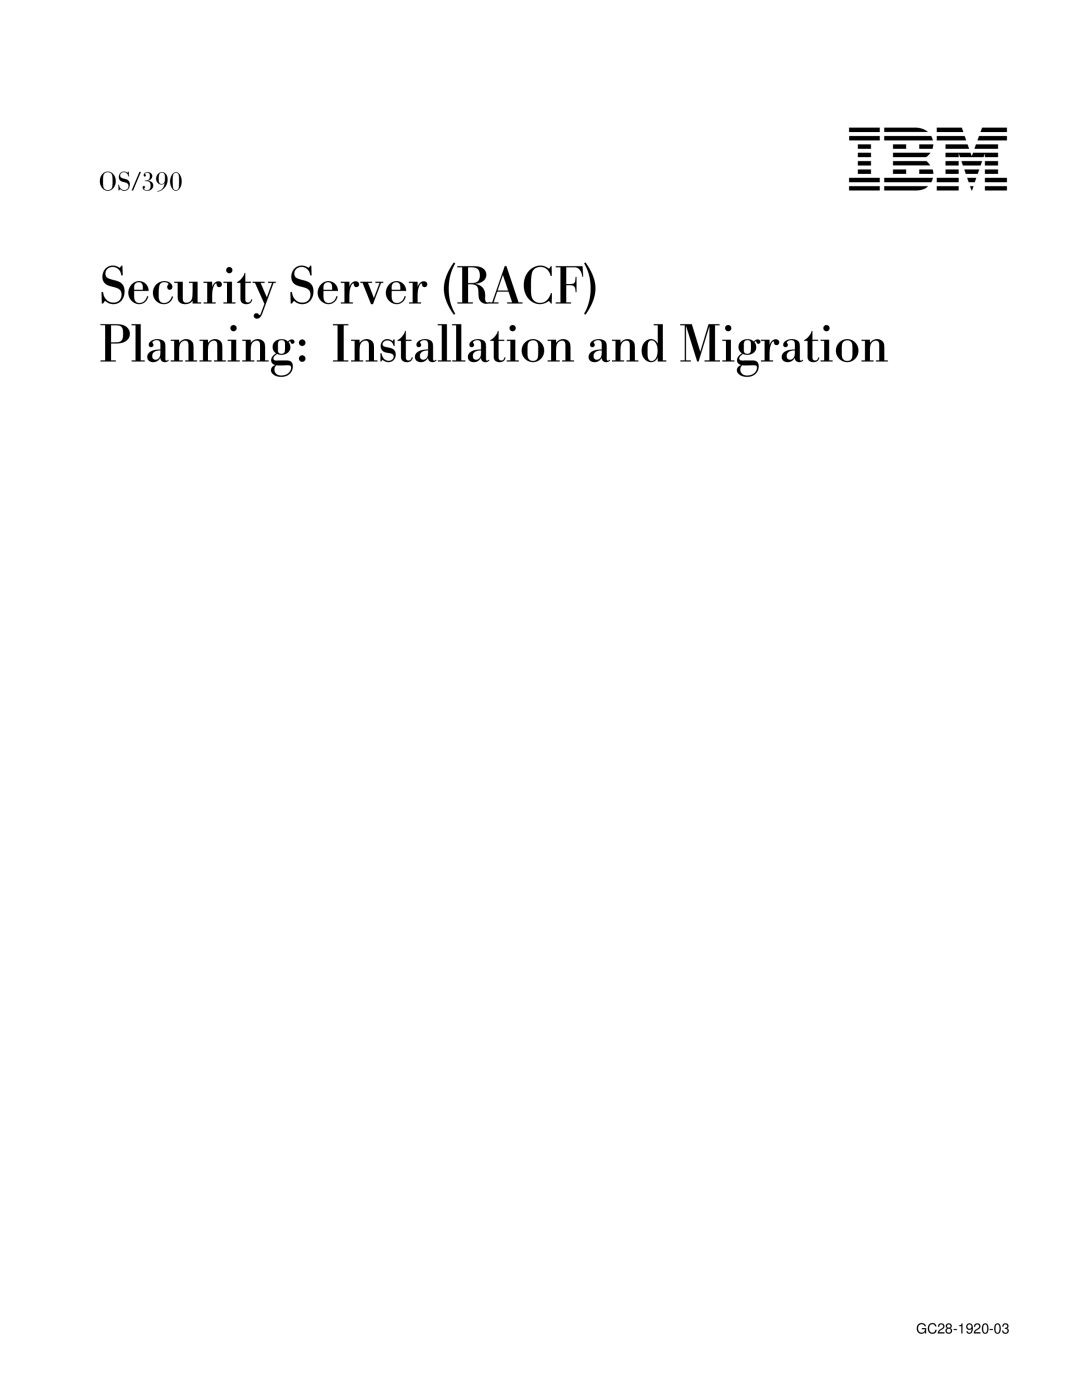 IBM OS/390 manual Ibm 